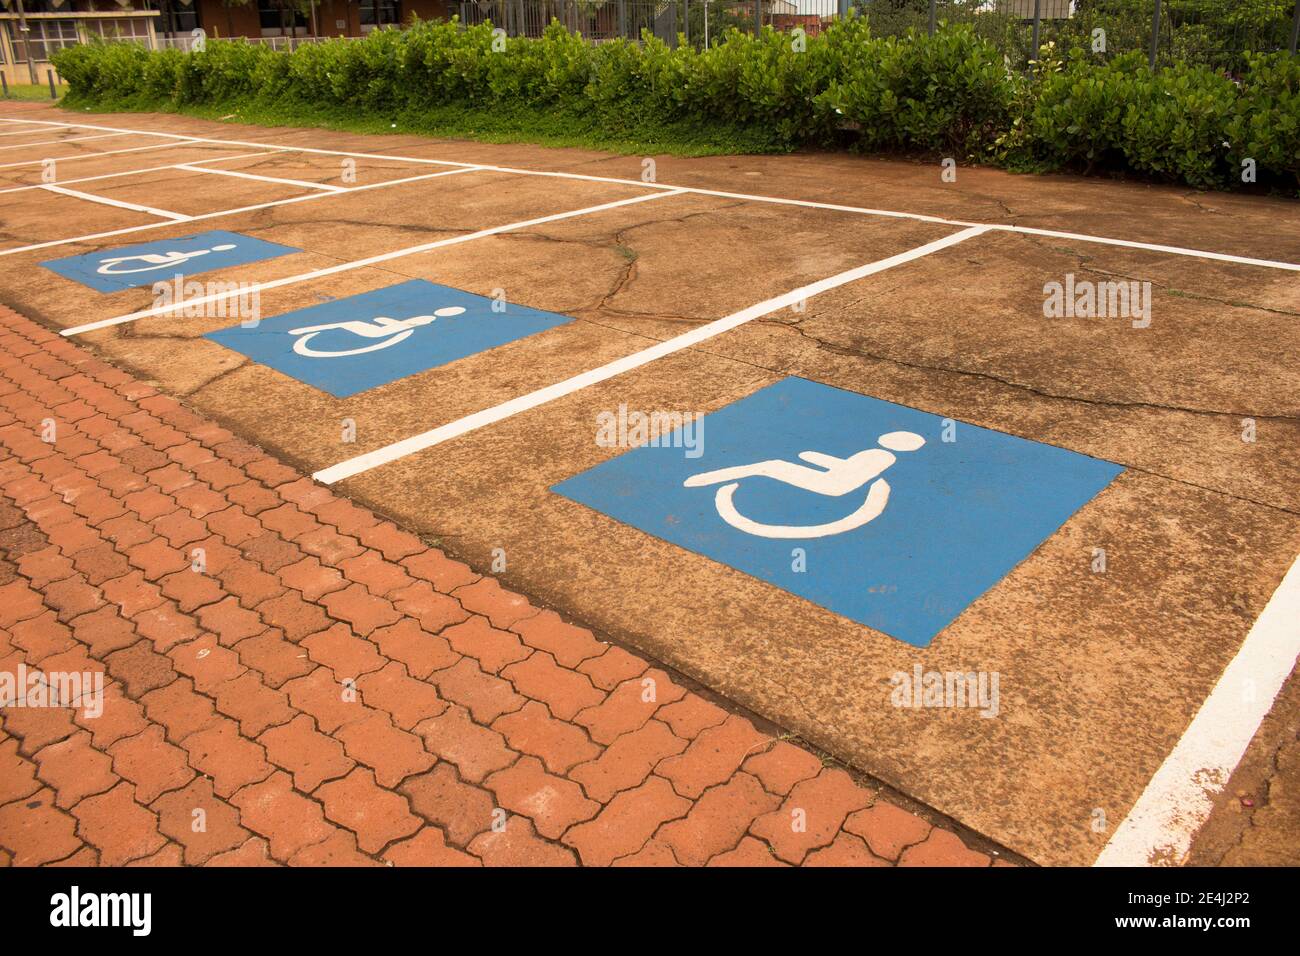 Jau / Sao Paulo / Brasilien - 02 21 2020: Behindertenparkplätze auf Beton. Mehrere blaue und weiße Schilder auf dem Boden gemalt Stockfoto